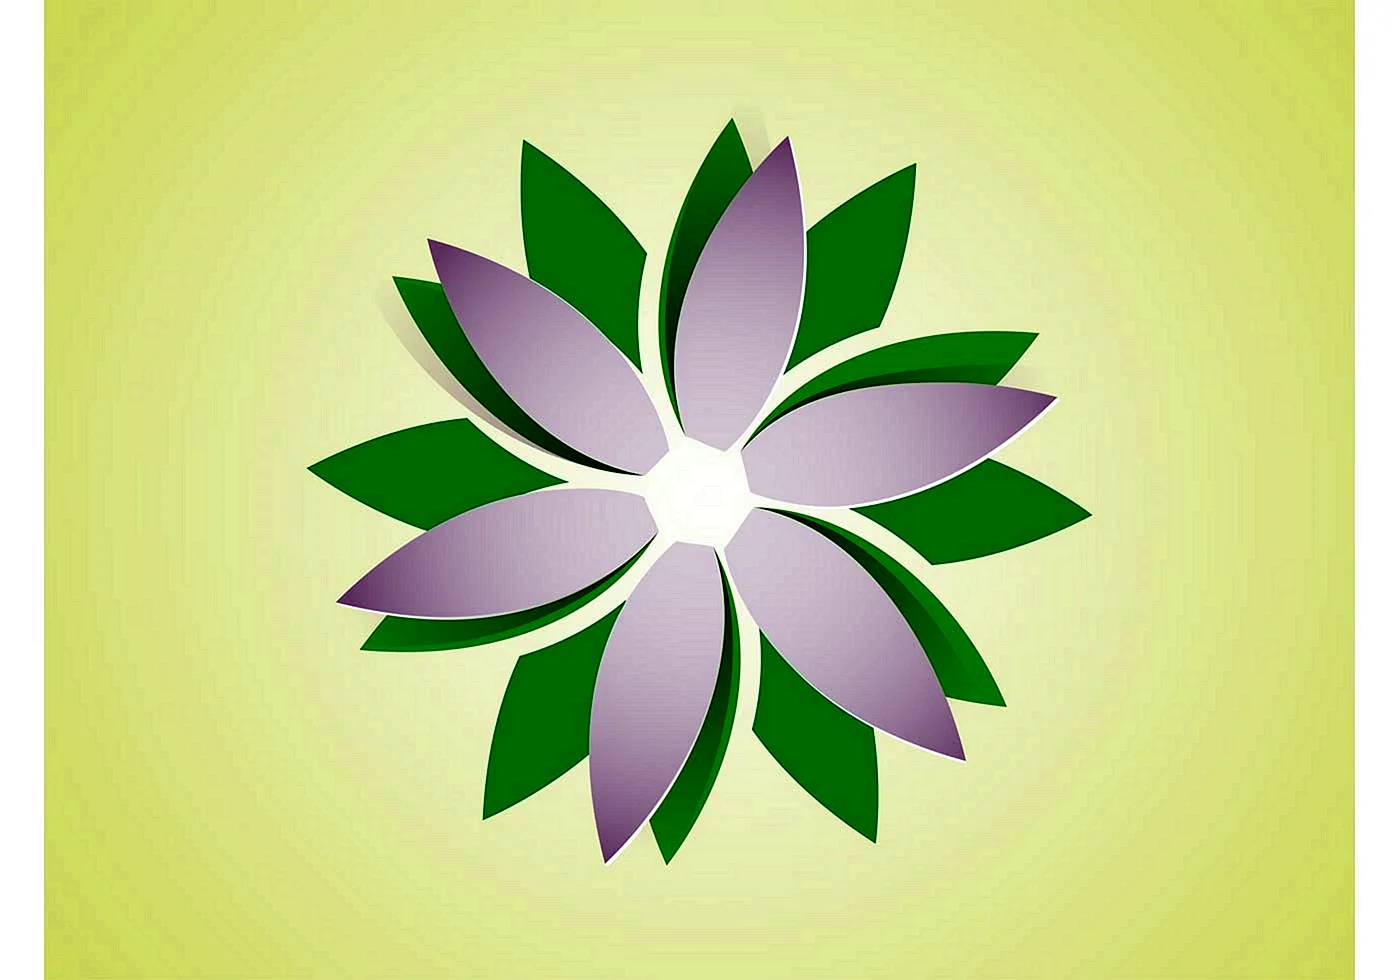 Логотип цветочек